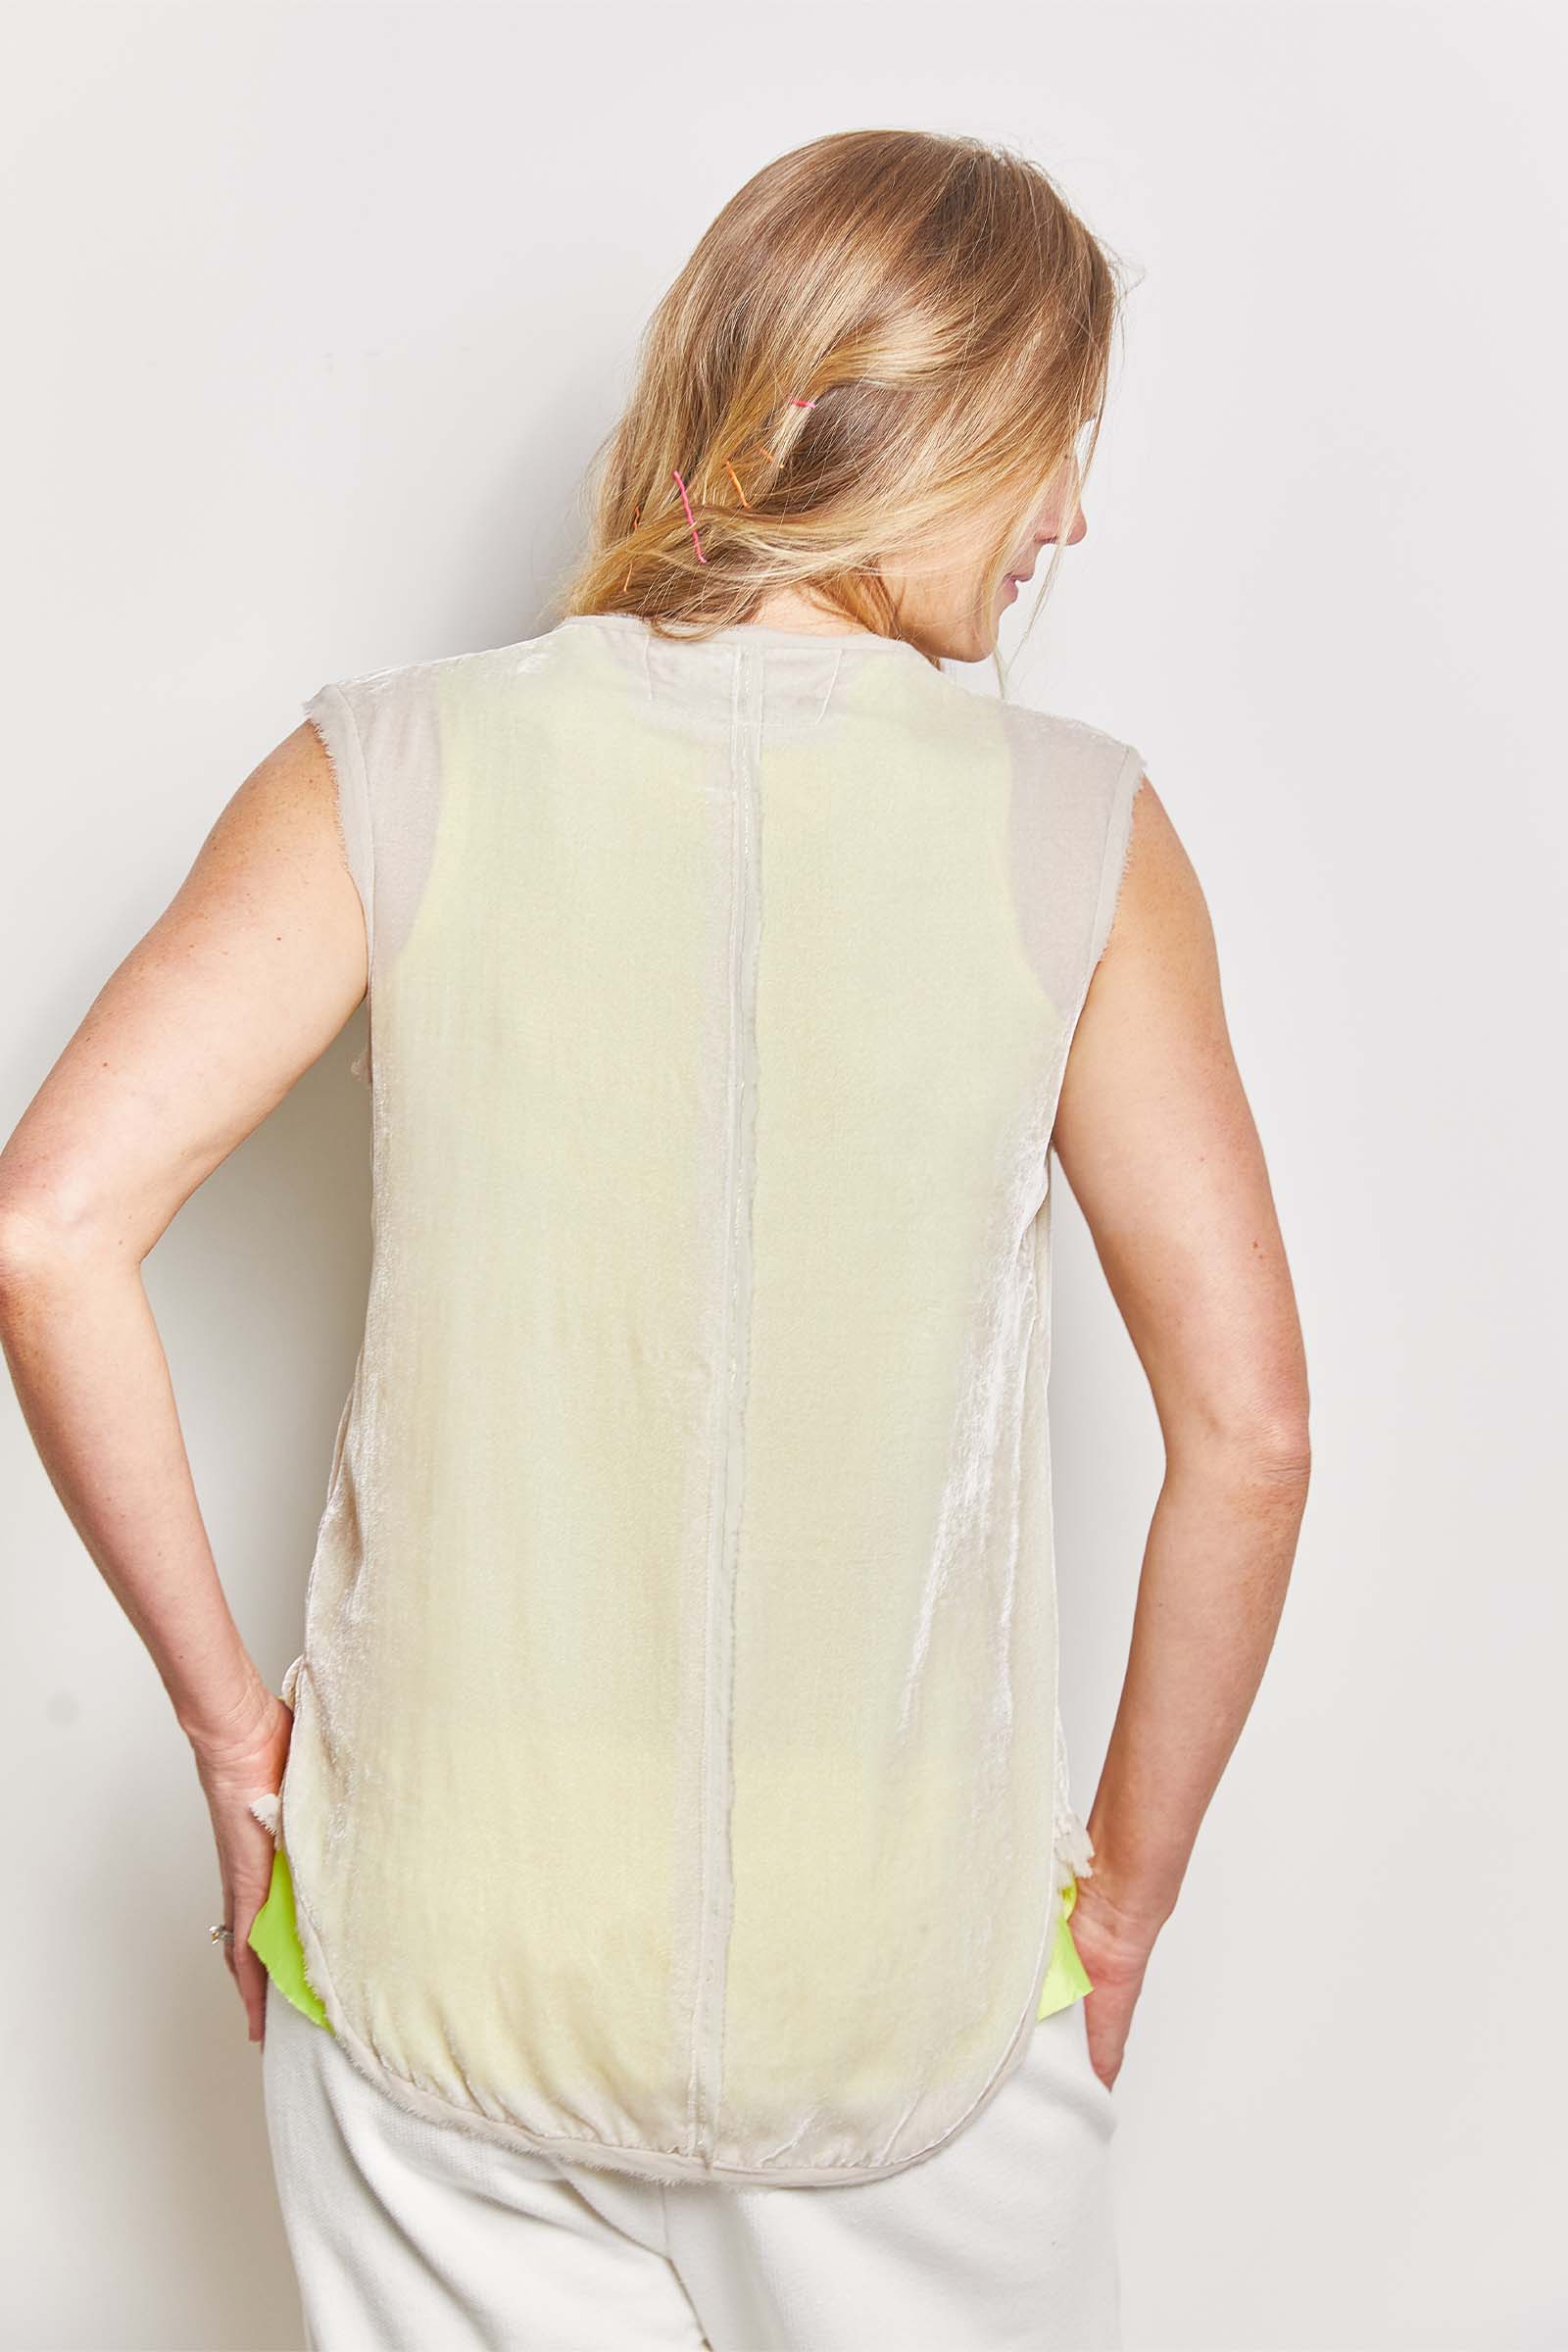 byfreer languid silk velvet sleeveless top.